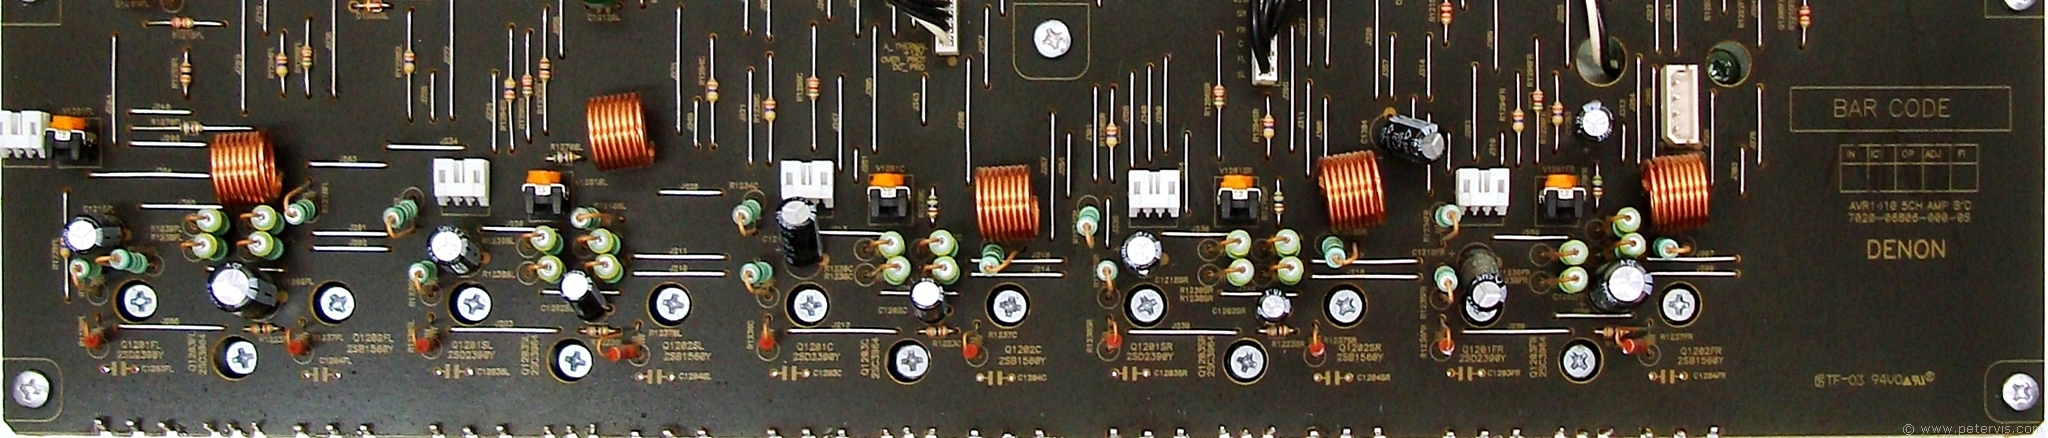 Power Amplifier Board